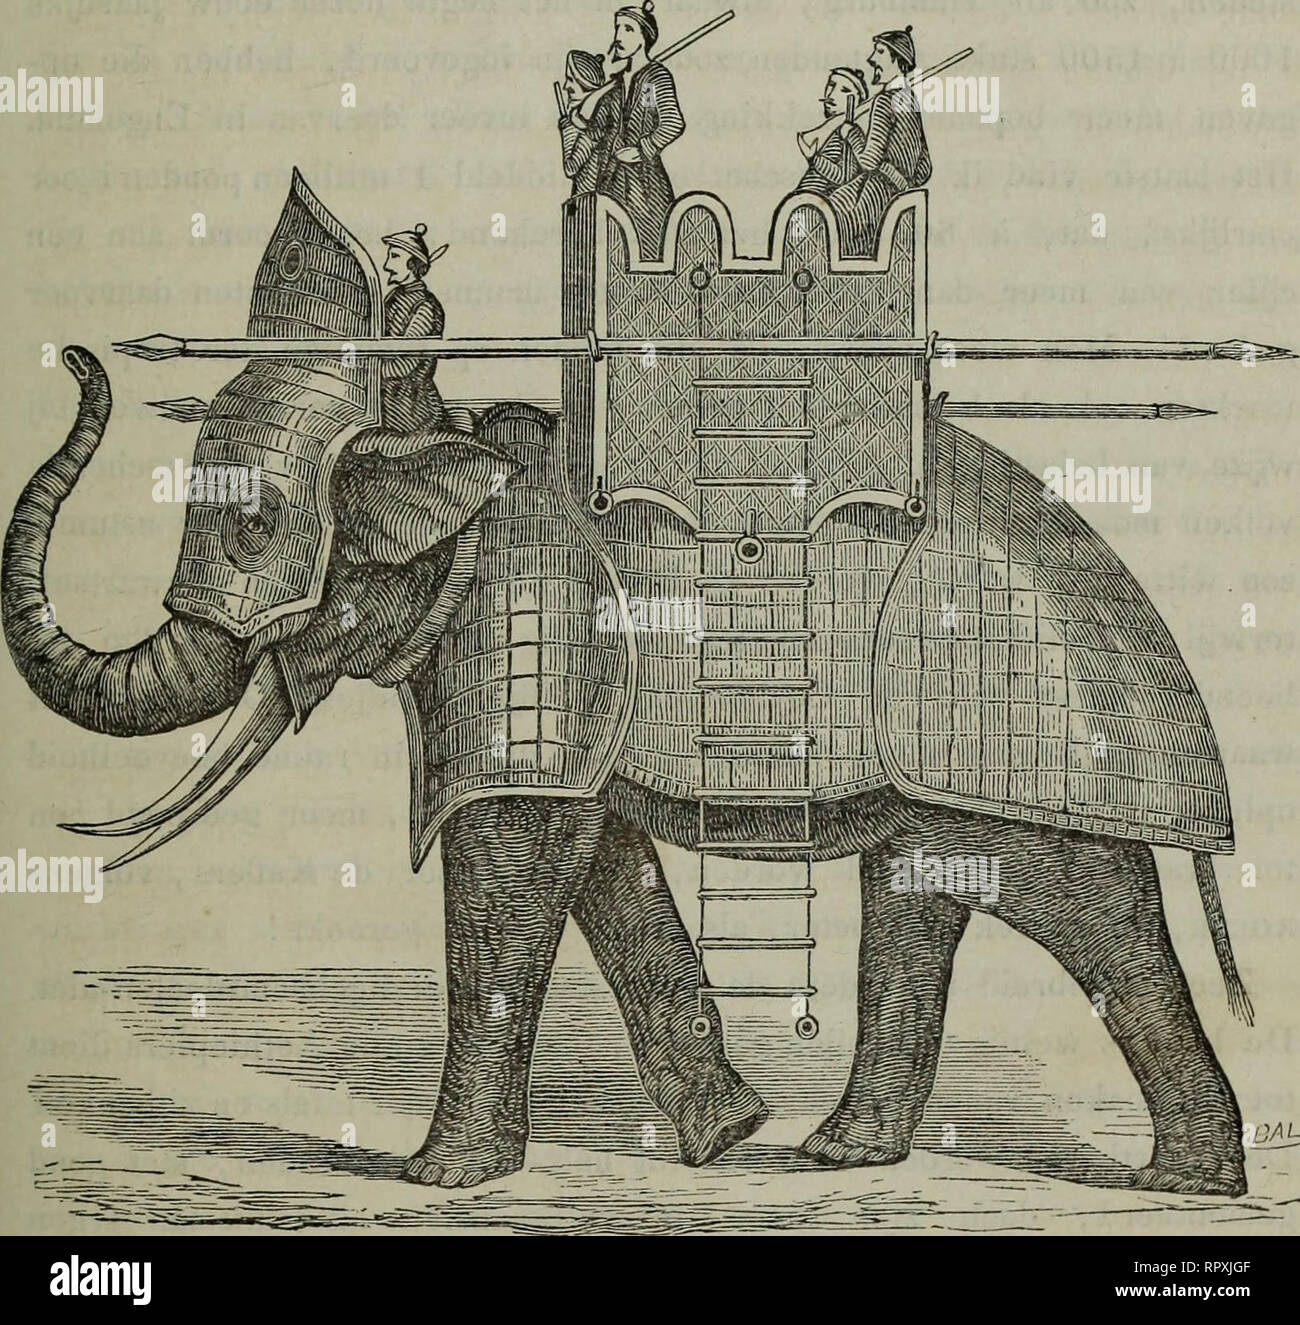 . Album der Natuur. Plus de STUDIËN DEN OLIFANT. 367 nlijke ontmoetten weg, daar niet wel, voortkonden ze zijn snuit rencontré "de stukken voortstiet Inzonderheid zoodanige." tot doeleinden wer- den nog onlangs, volgens eene van mededeeling diard, verscheidene olifanten uit Ceylon naar Bengalen. overgebragt. UAL.. {Birmannie Hedendaagsclie ooiiogsolifant,.) Van hoe veelzijdig gebruik ook bij het leven, betrekkelijk nog meer wordt de olifant gezocht na zijnen dood. In de eerste en voornaamste plaats een denkt entirely hier dadelijk aan het de elpenbeen slagtanden porte, pouvoir voir nos zijne opgeleverd. Tallooze Banque D'Images